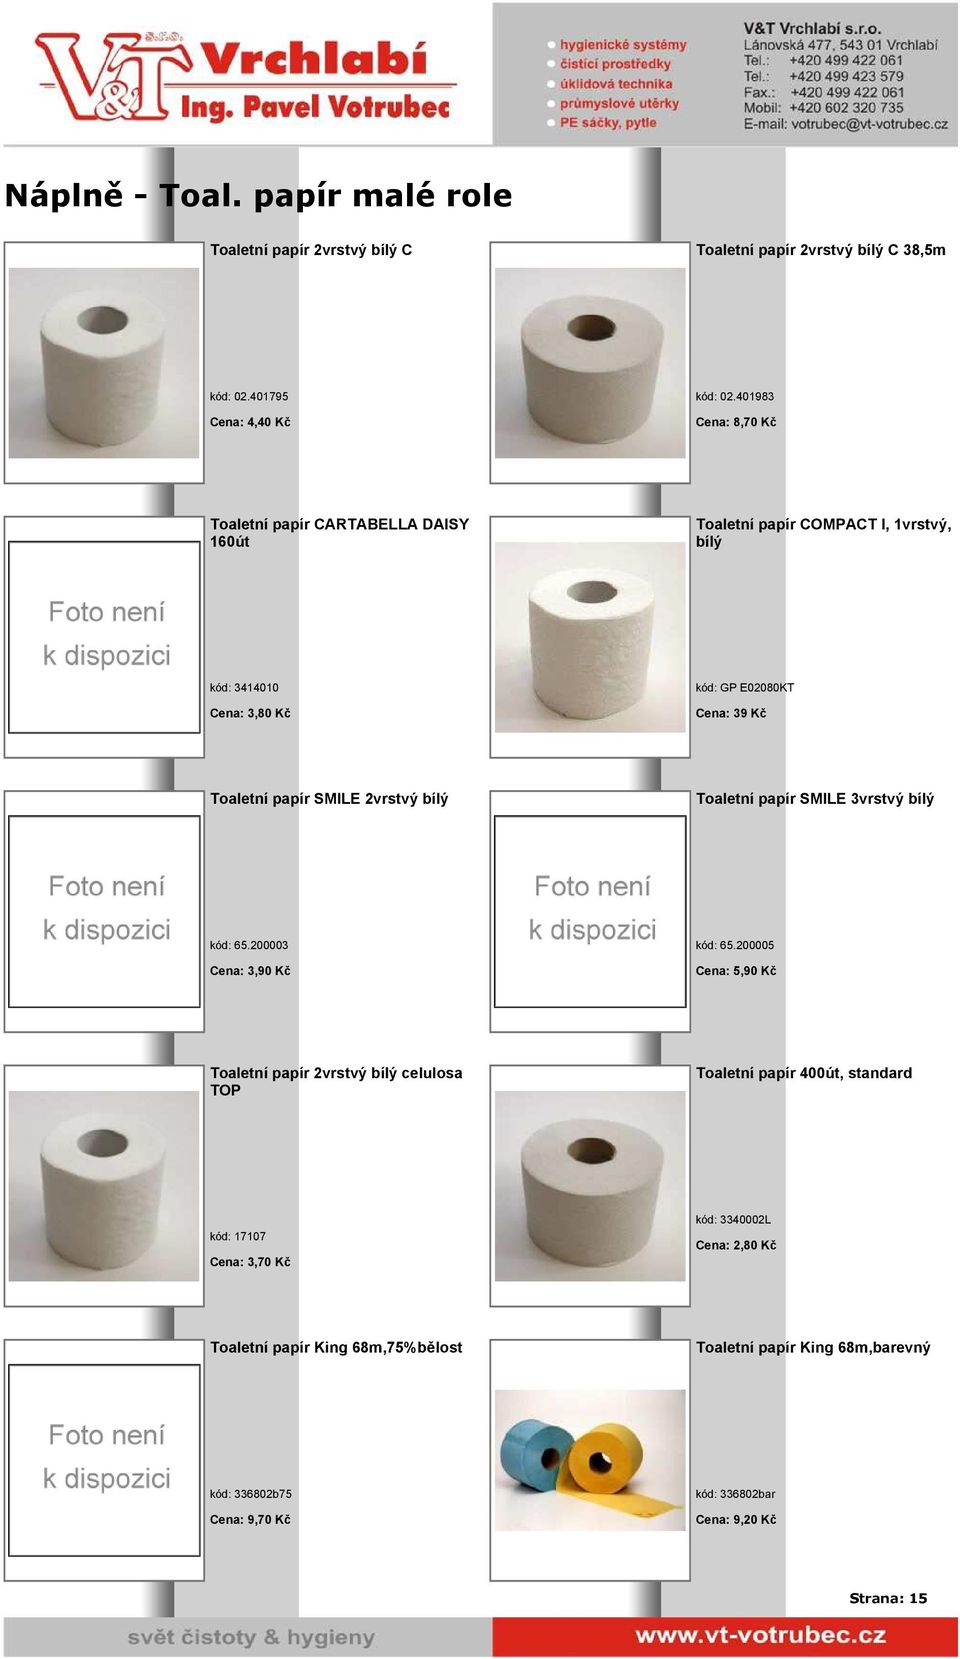 papír SMILE 2vrstvý bílý Toaletní papír SMILE 3vrstvý bílý kód: 65.200003 Cena: 3,90 Kč kód: 65.